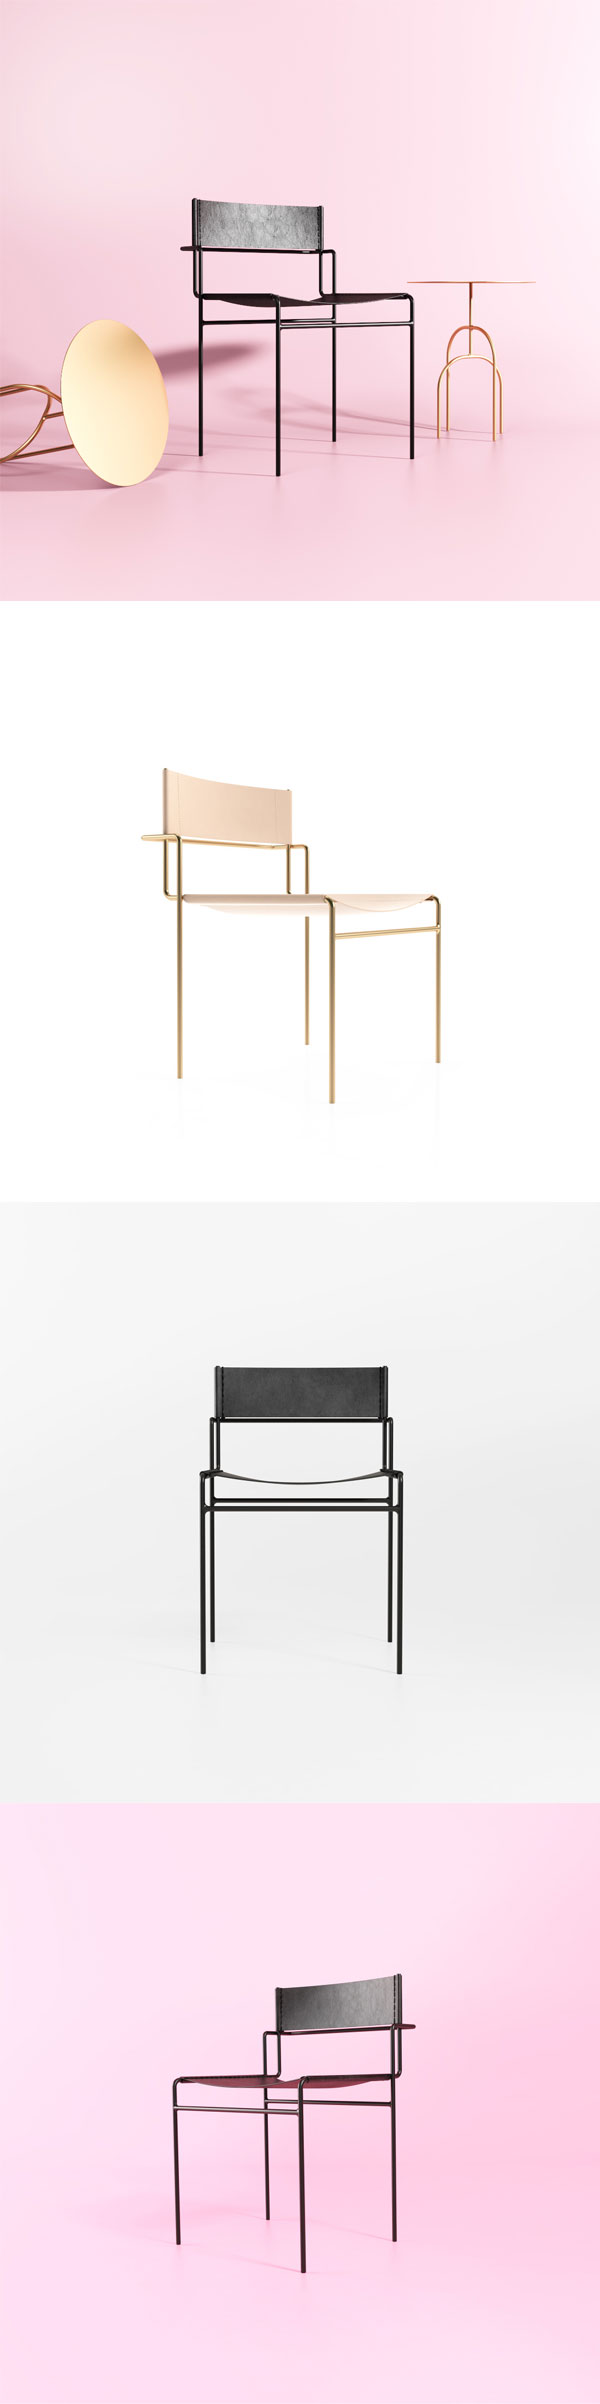 Tímida | cadeira do designer brasileiro Pedro Paulo-Venzon